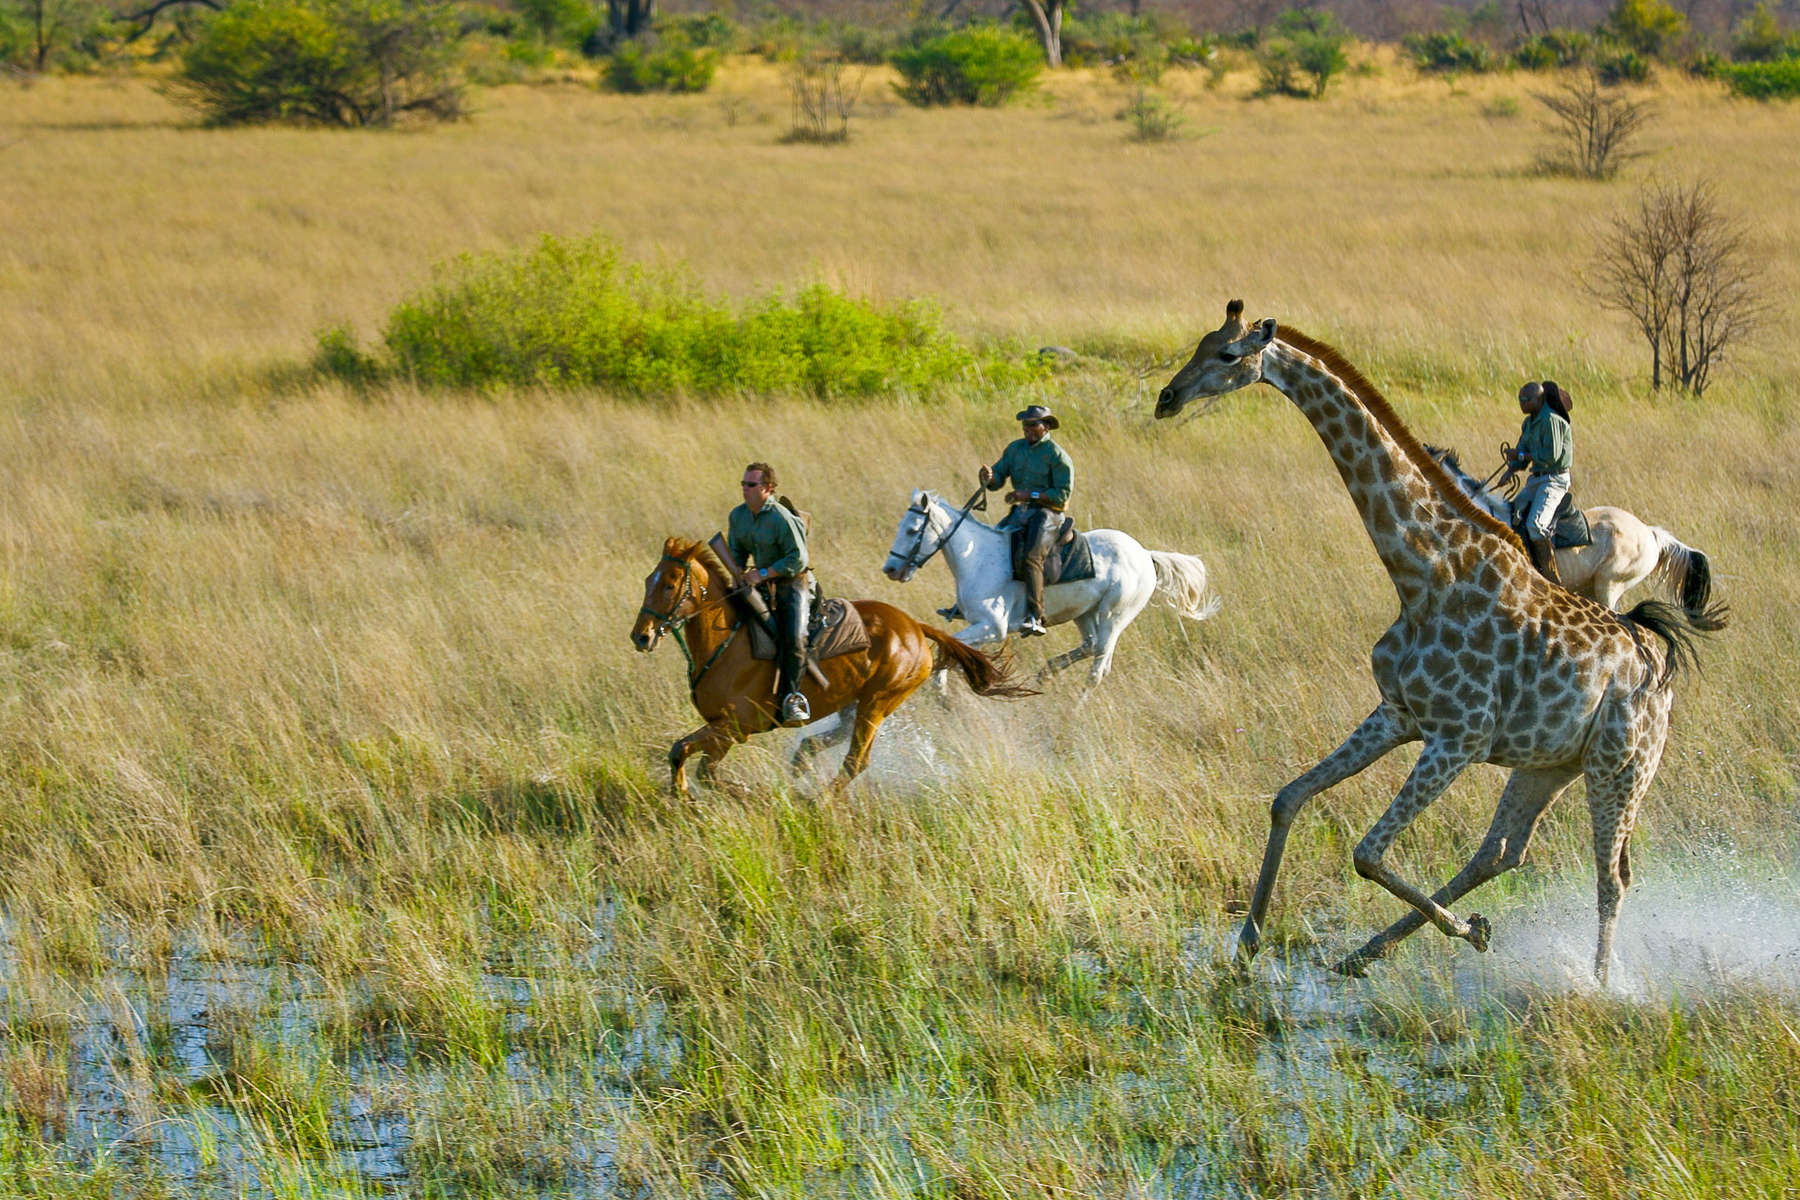 Partez pour un safari à cheval en Afrique australe